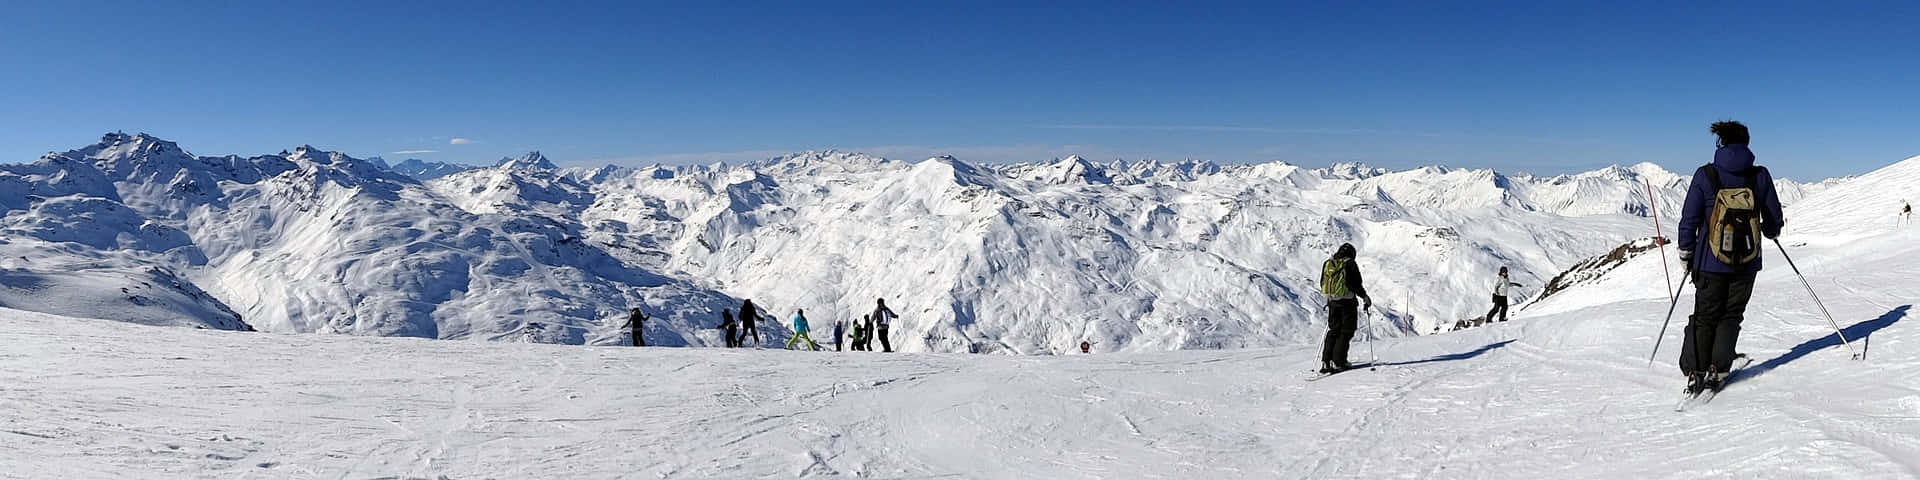 Imagenpanorámica De Personas Esquiando En La Nieve.